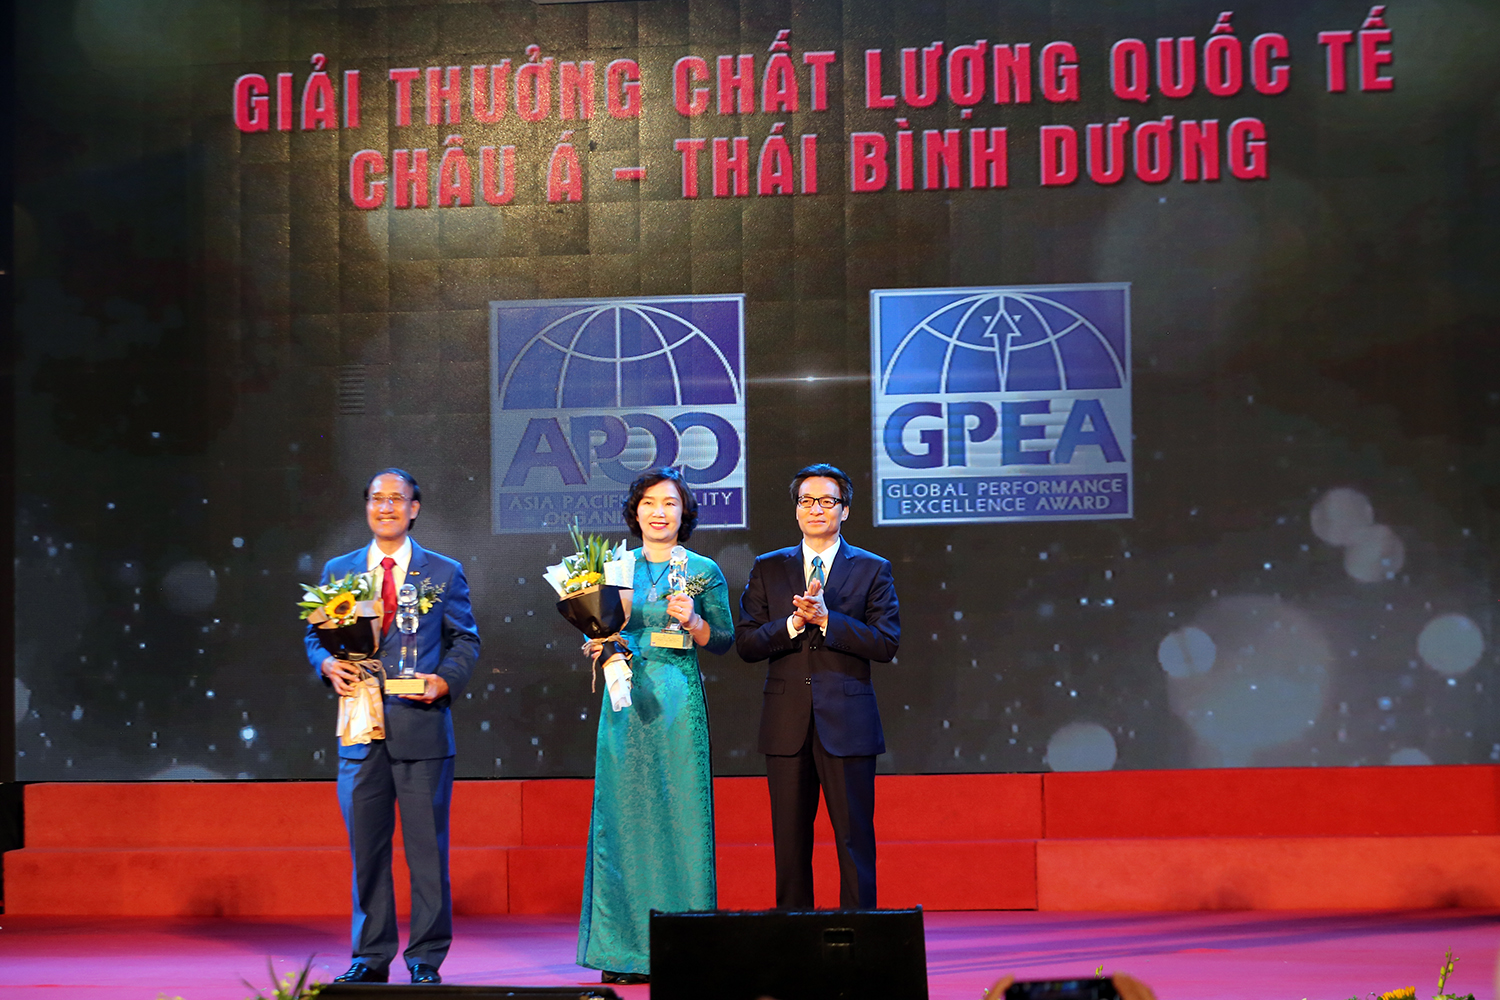 Phó Thủ tướng Vũ Đức Đam trao Giải thưởng Chất lượng quốc tế Châu Á-Thái Bình Dương năm 2018 cho 2 DN. Ảnh: VGP/Đình Nam